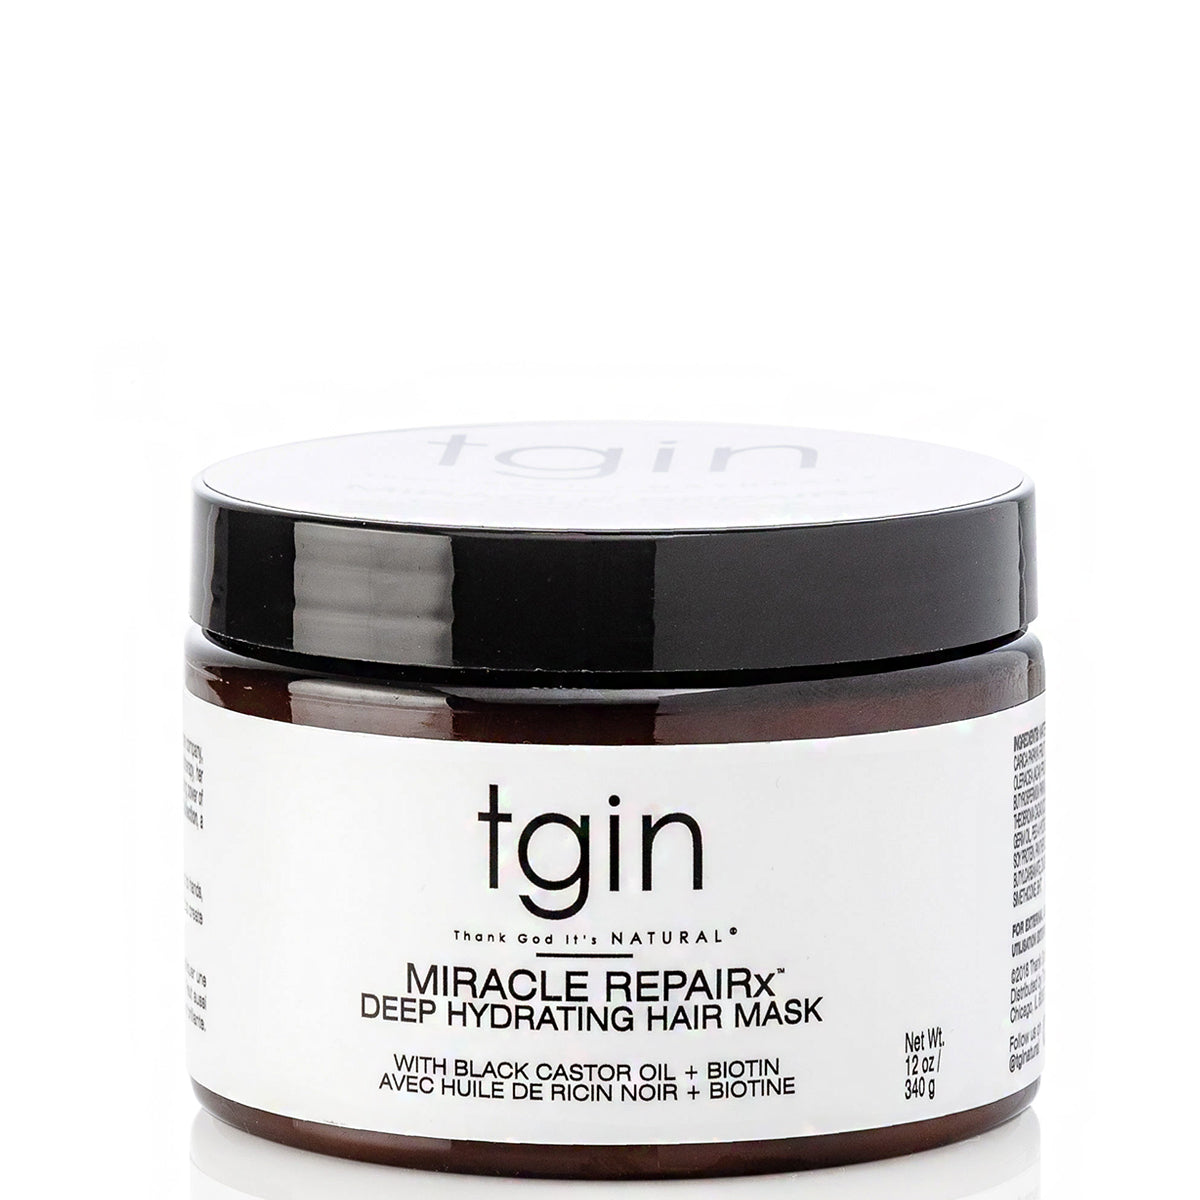 Tgin Miracle Repairx Deep Hydrating Hair Mask 12oz